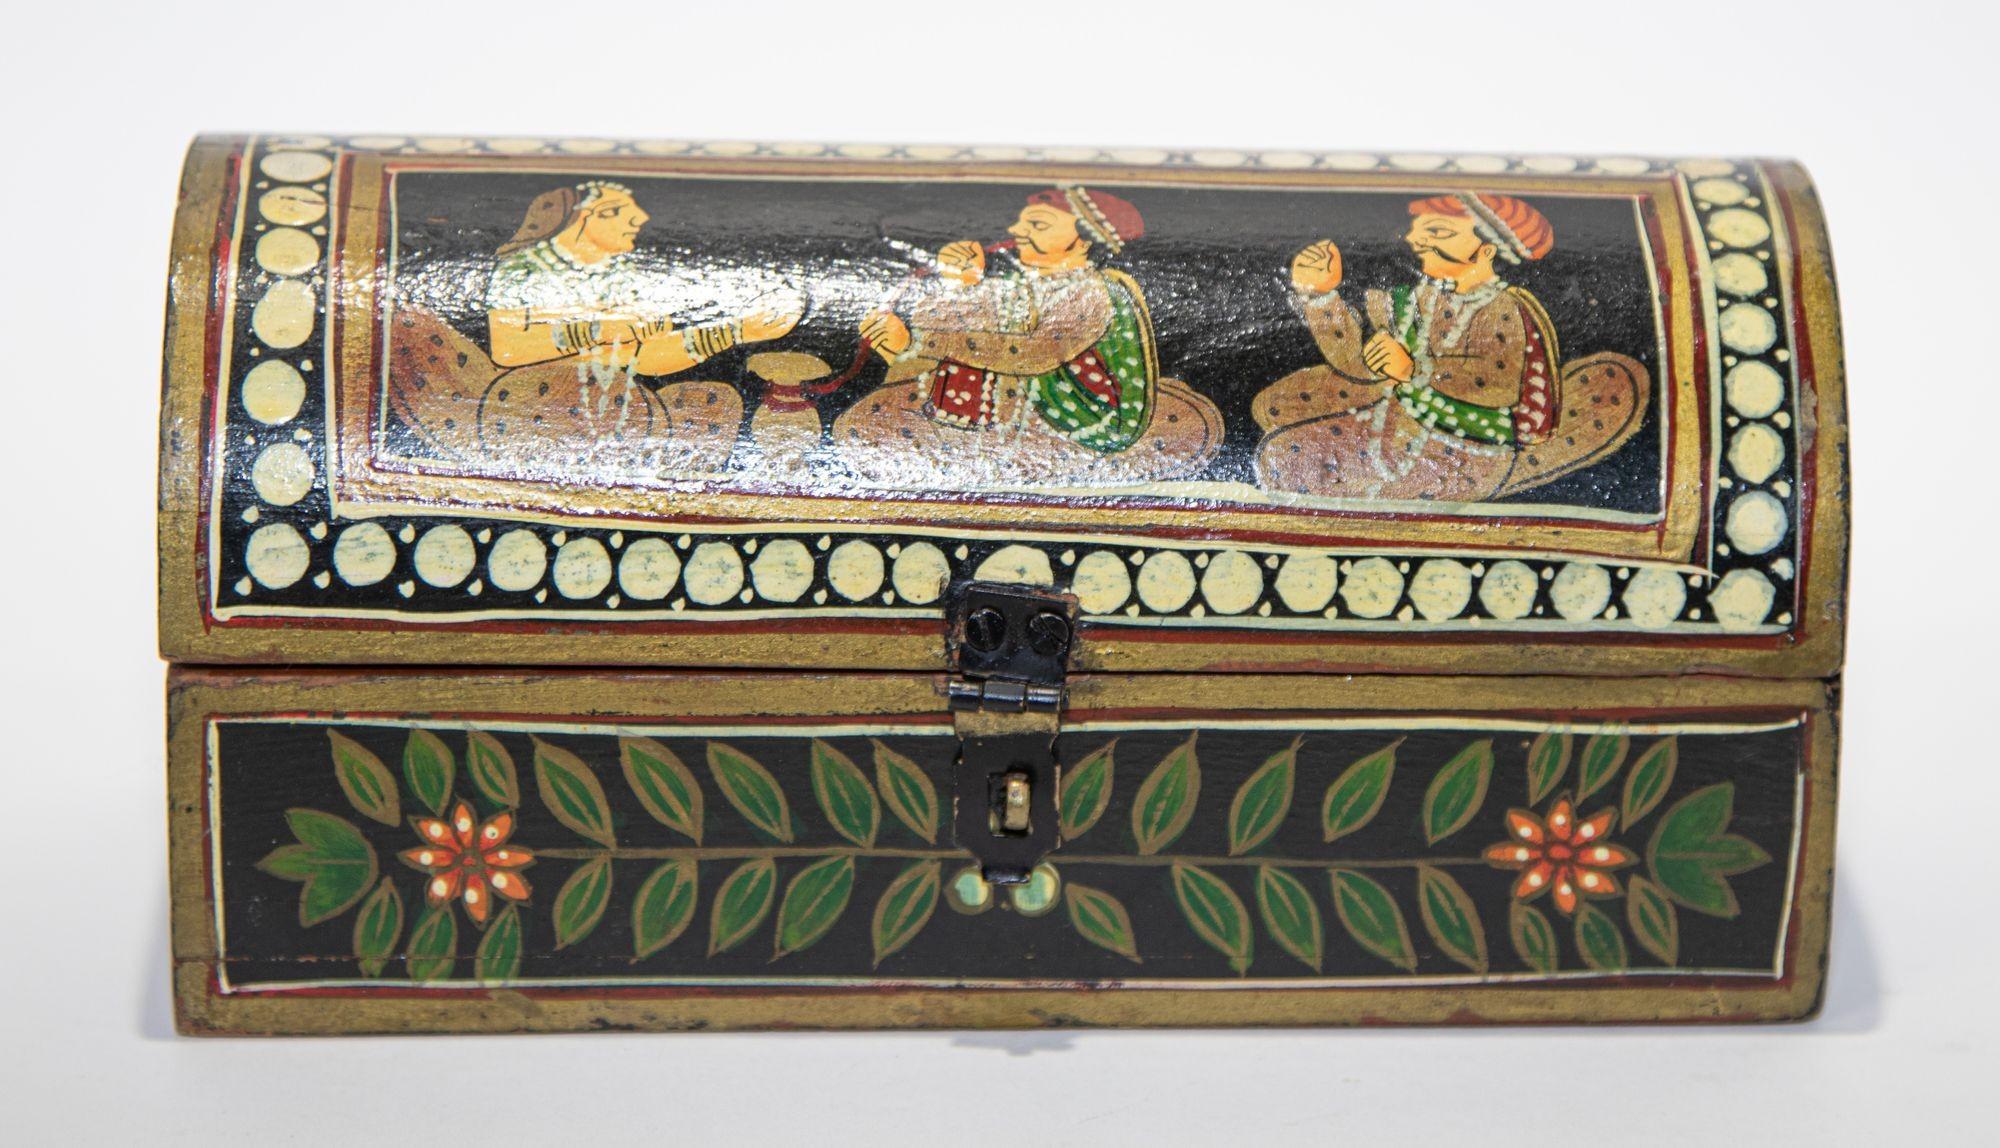 Le plumier indien rectangulaire avec couvercle à charnière bombé est peint à la main avec des scènes de cour figuratives colorées du Maharajah sur le dessus et des motifs floraux sur chaque côté.
Plumier décoratif Rajasthani peint à la main.
En